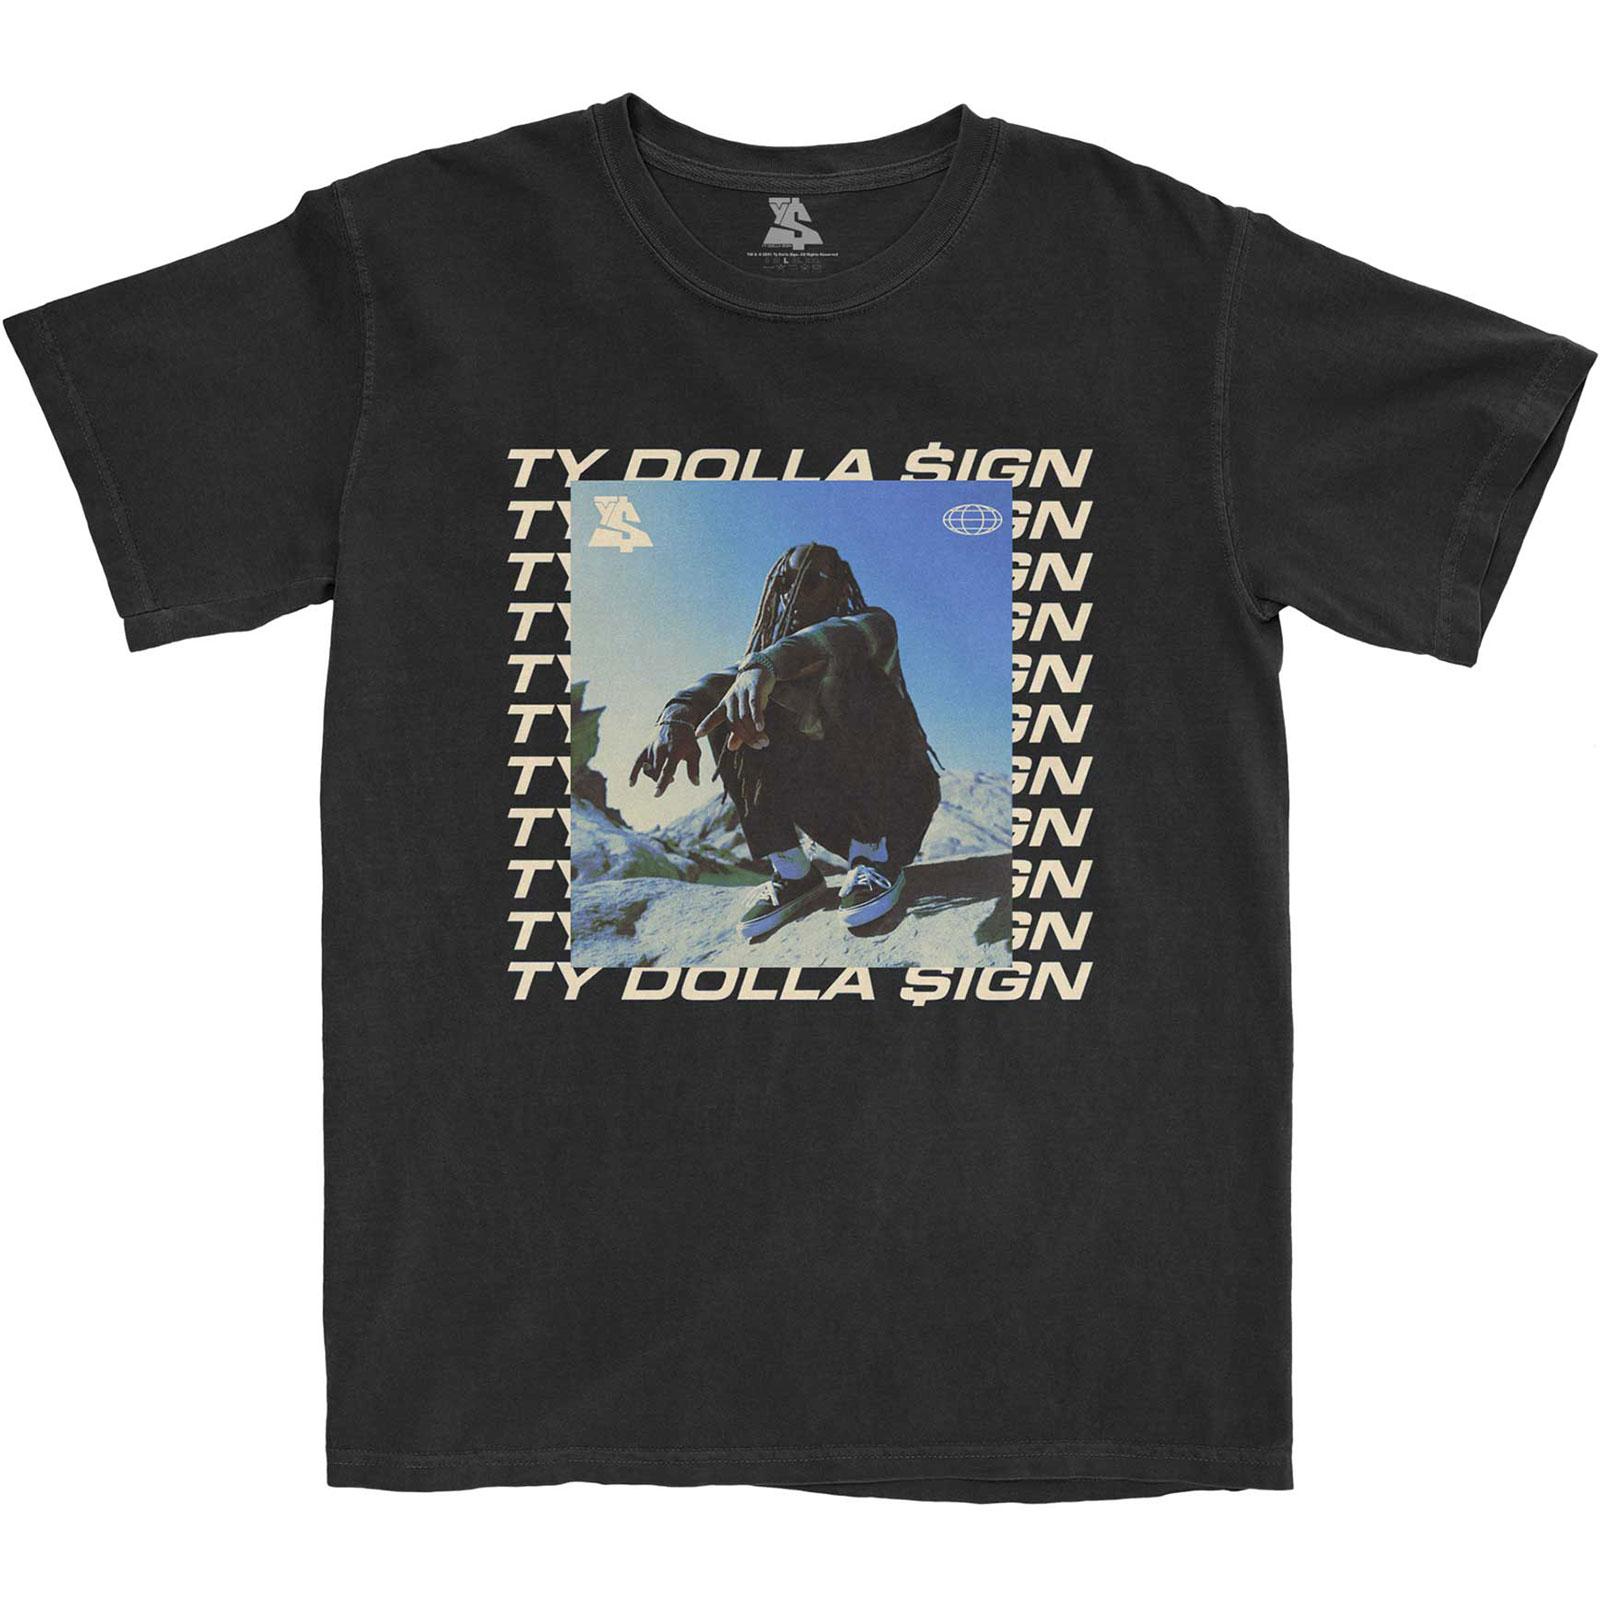 (タイ・ダラー・サイン) Ty Dolla $ign オフィシャル商品 ユニセックス Global Square Tシャツ コットン 半袖 トップス 【海外通販】